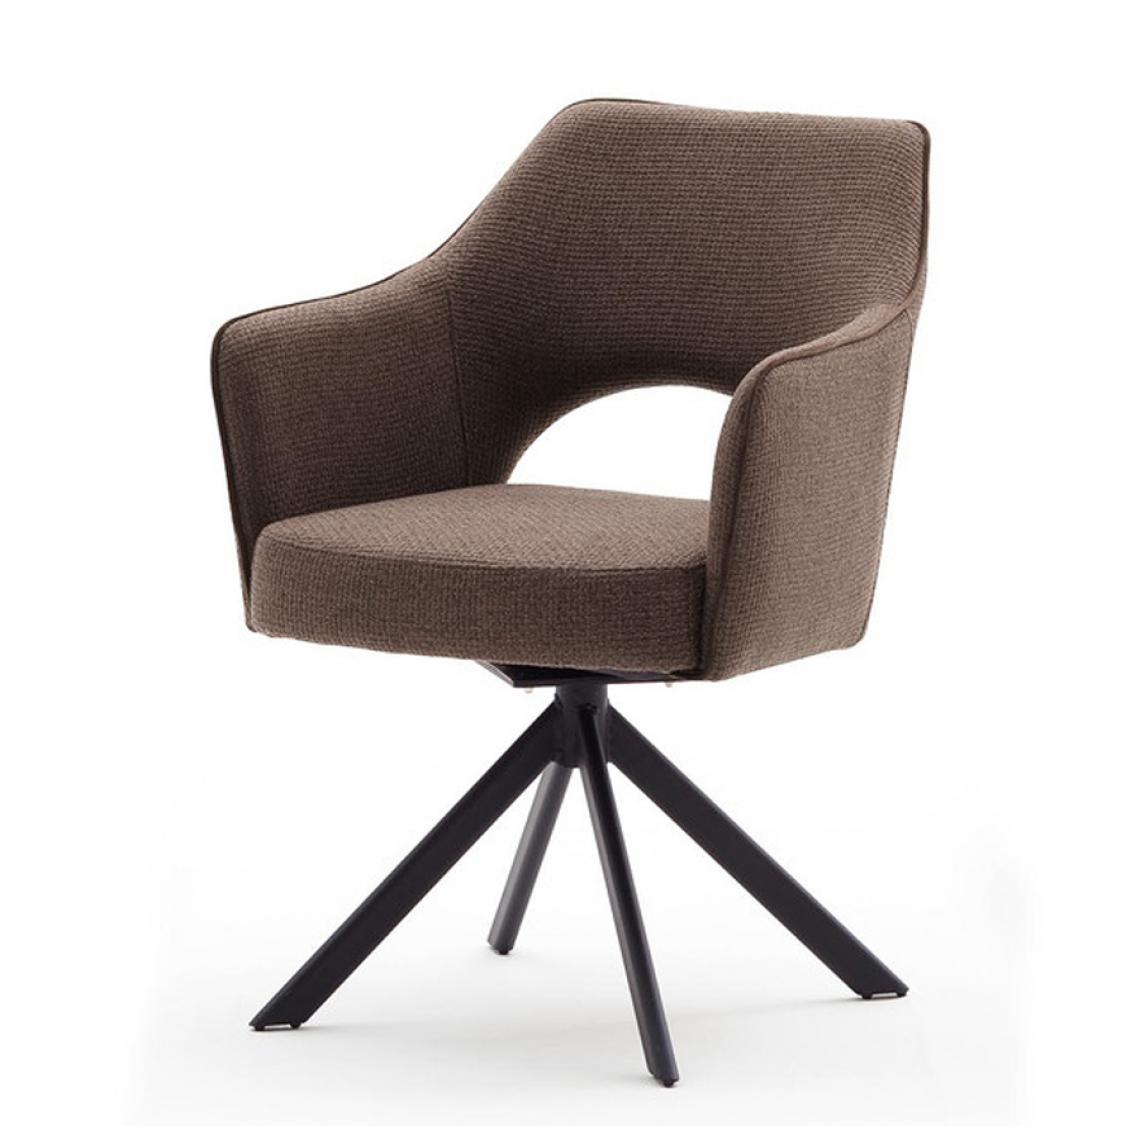 Pegane - Chaise pivotante en métal et tissu coloris capuccino - L.64 x H.85 x P.61 cm -PEGANE- - Chaises